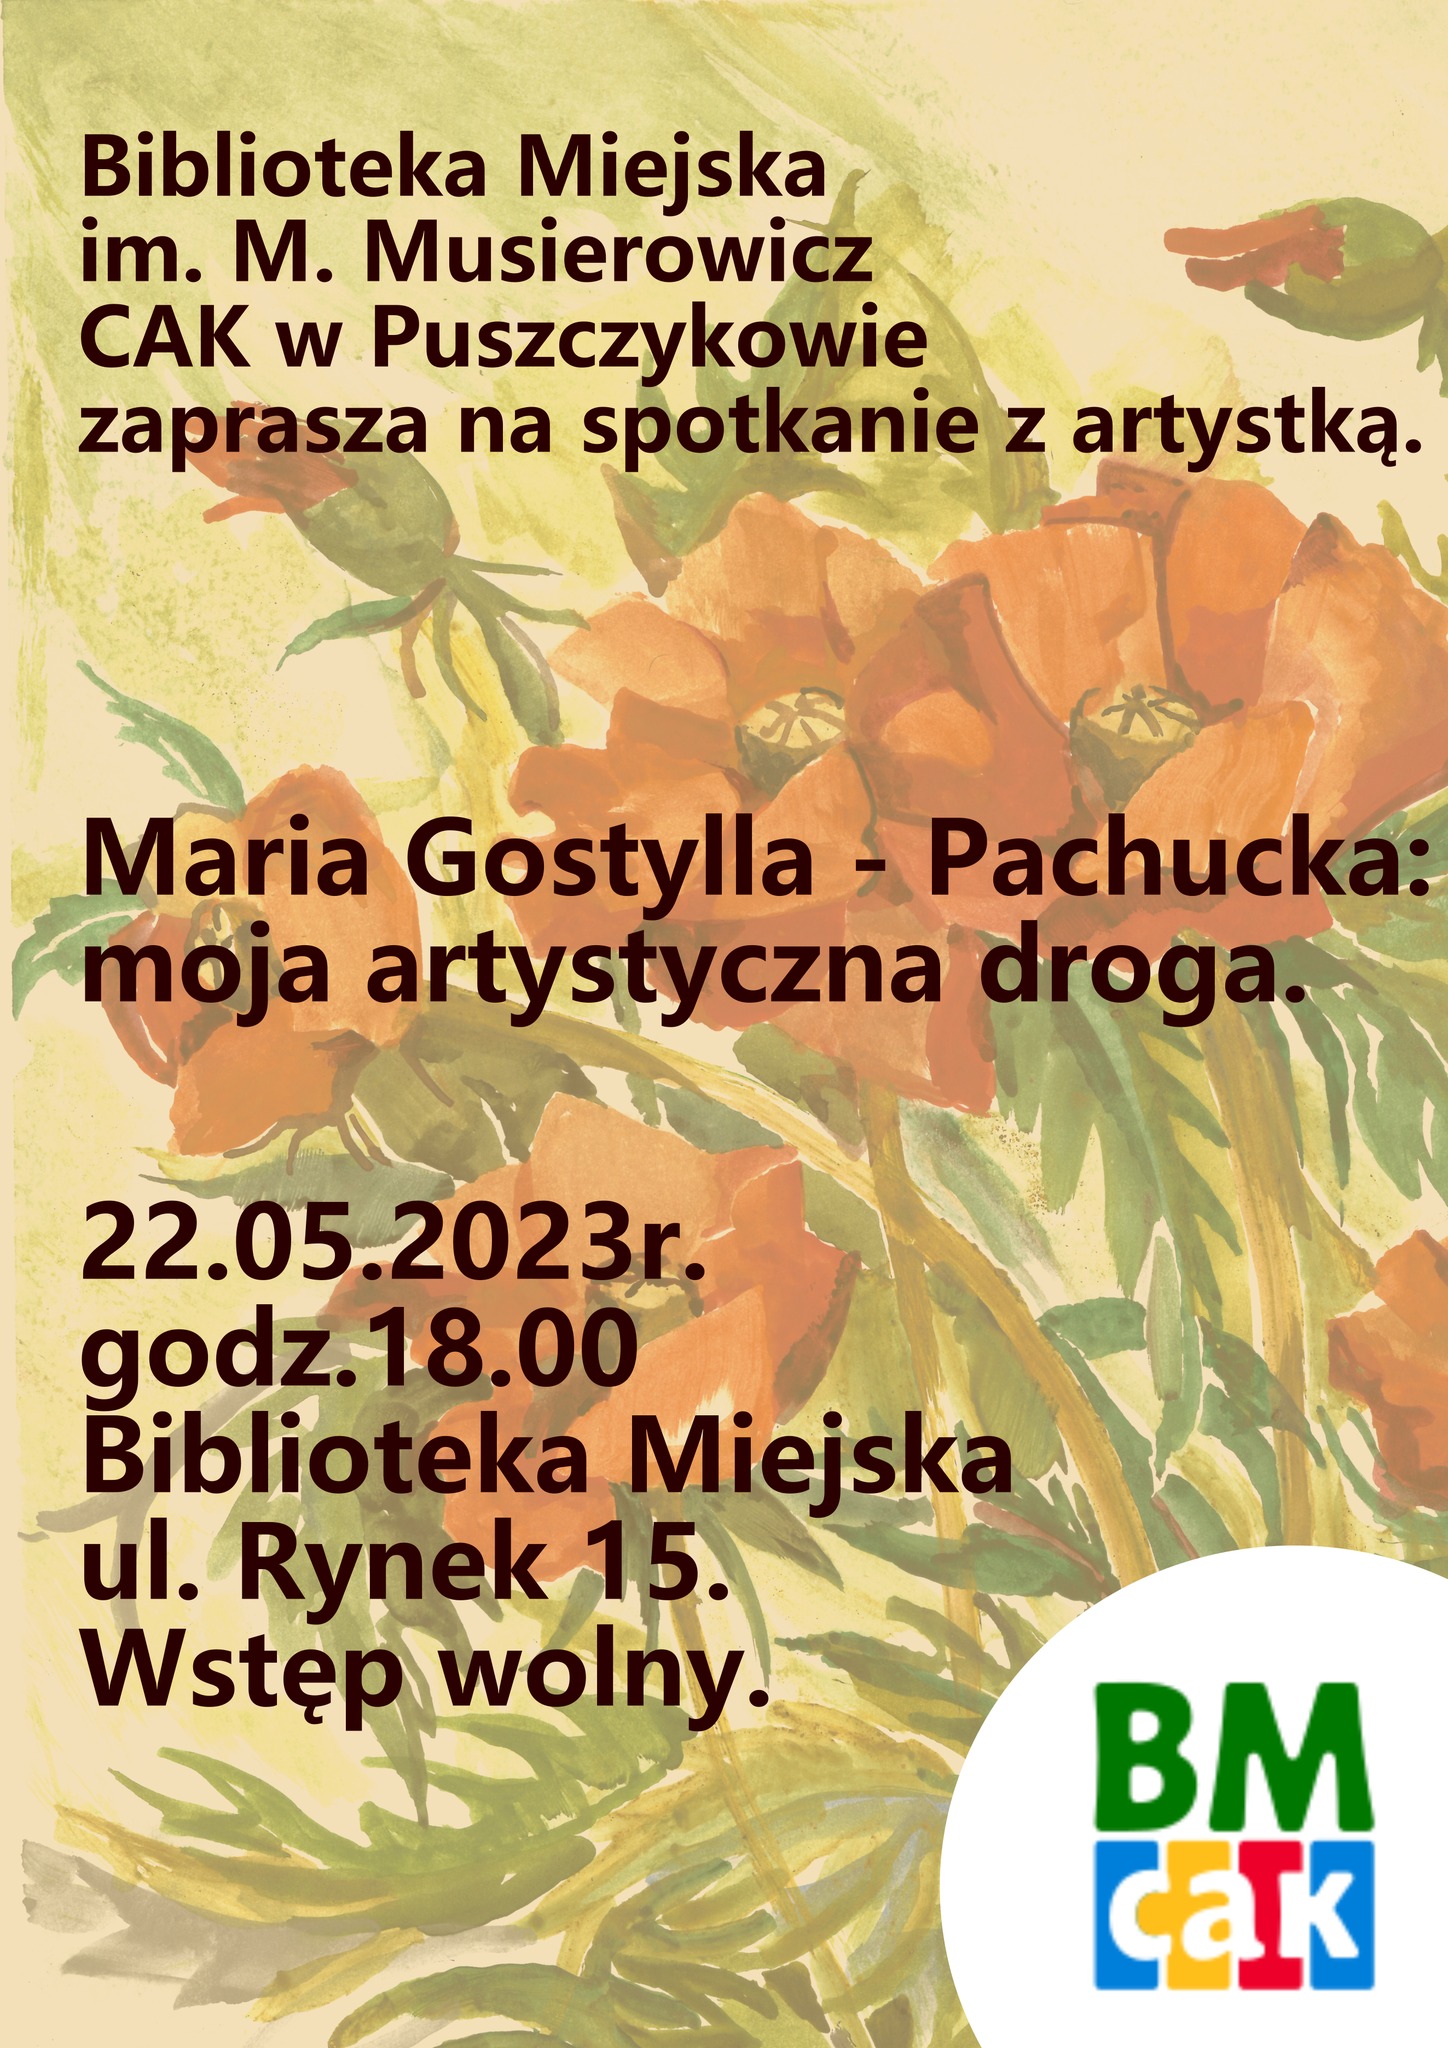 Zapraszamy na spotkanie: Moja artystyczna droga - Maria Gostylla-Pachucka.